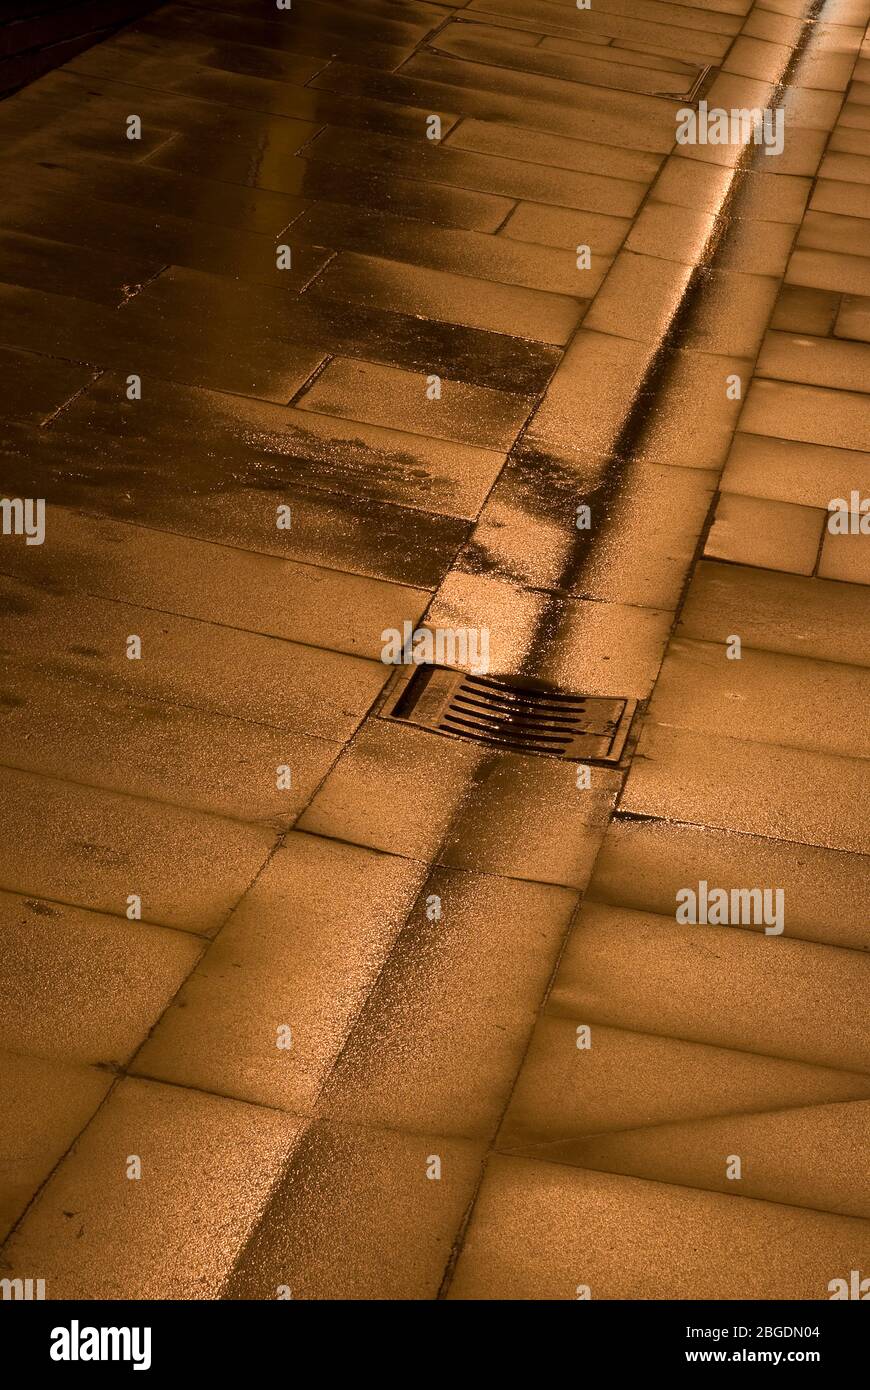 Bandiere di pavimentazione bagnate con canaletta centrale, scarico e griglia, tutte con un bagliore dorato dall'illuminazione stradale riflessa Foto Stock